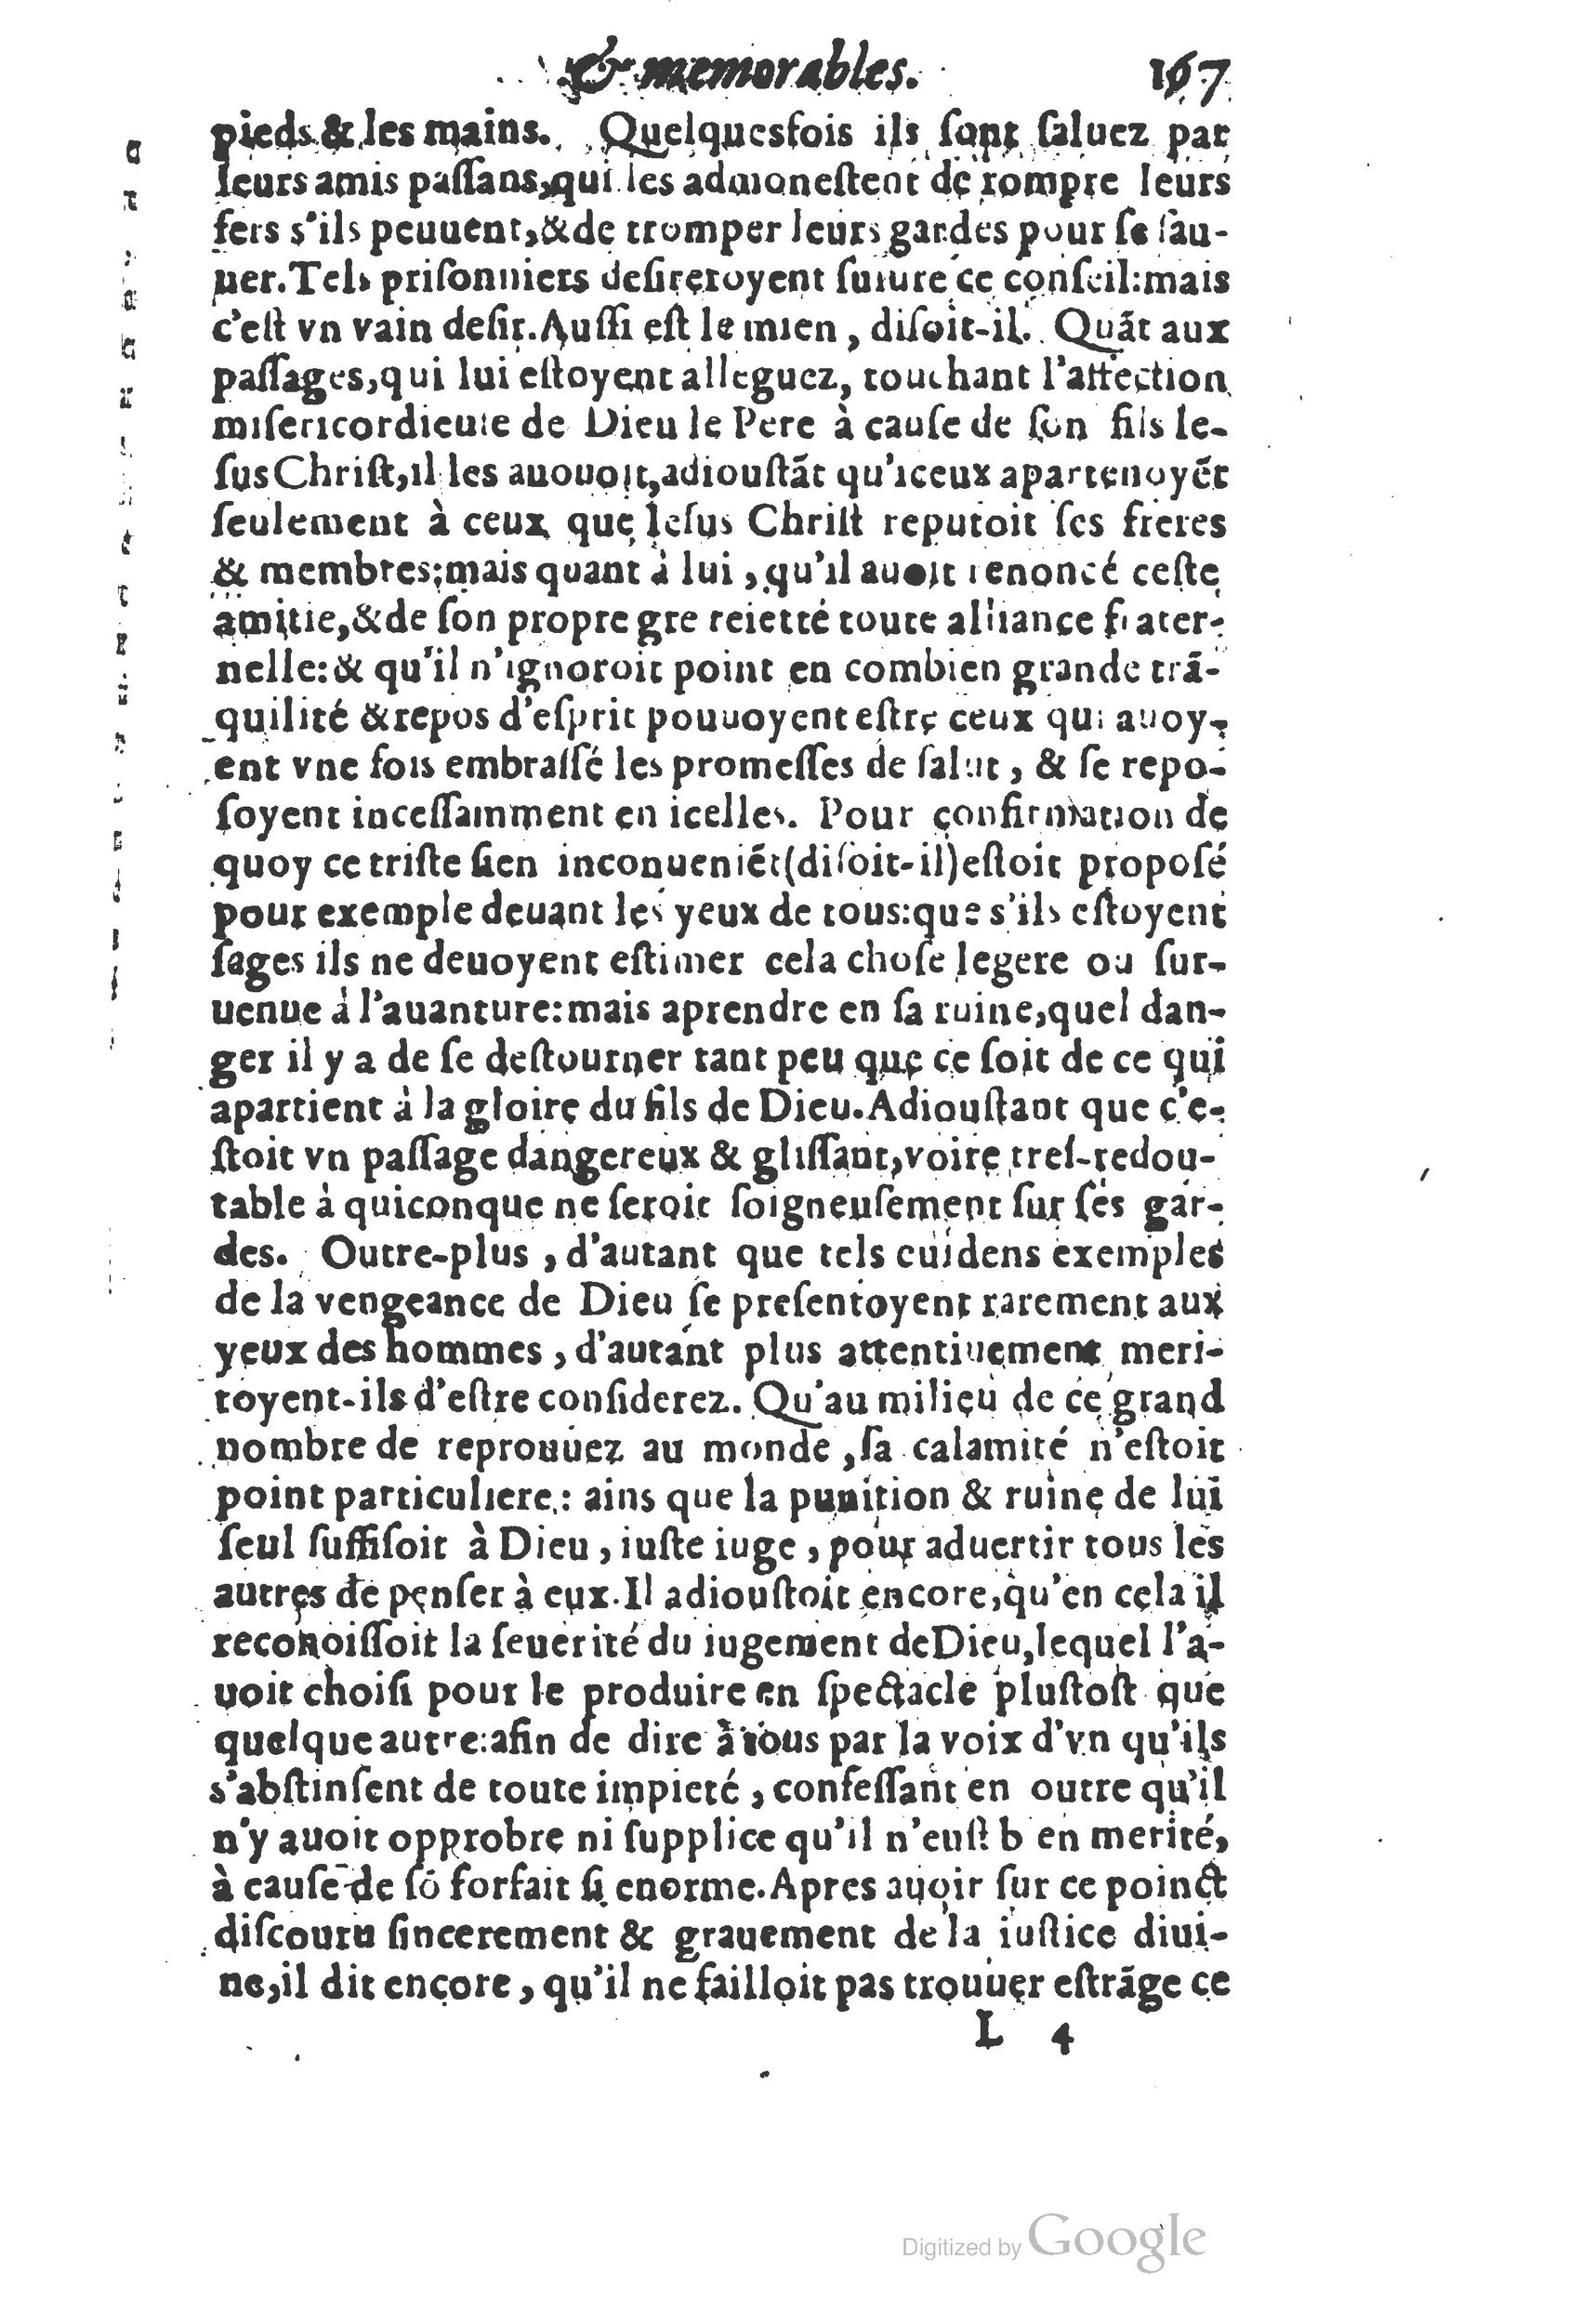 1610 Trésor d’histoires admirables et mémorables de nostre temps Marceau Princeton_Page_0188.jpg